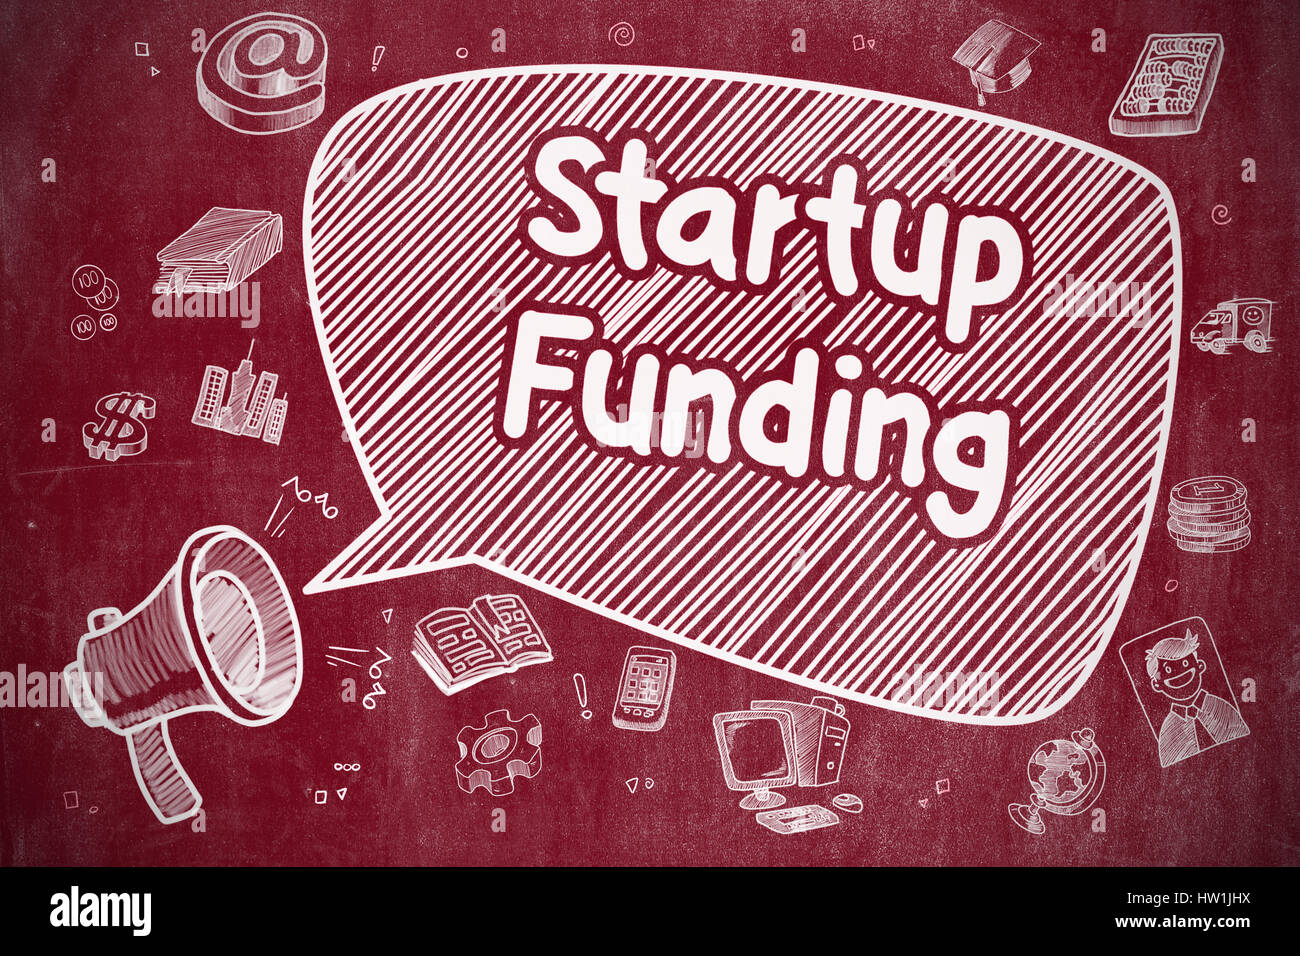 Startup-Finanzierung - Hand gezeichnete Illustration an rote Tafel. Stockfoto